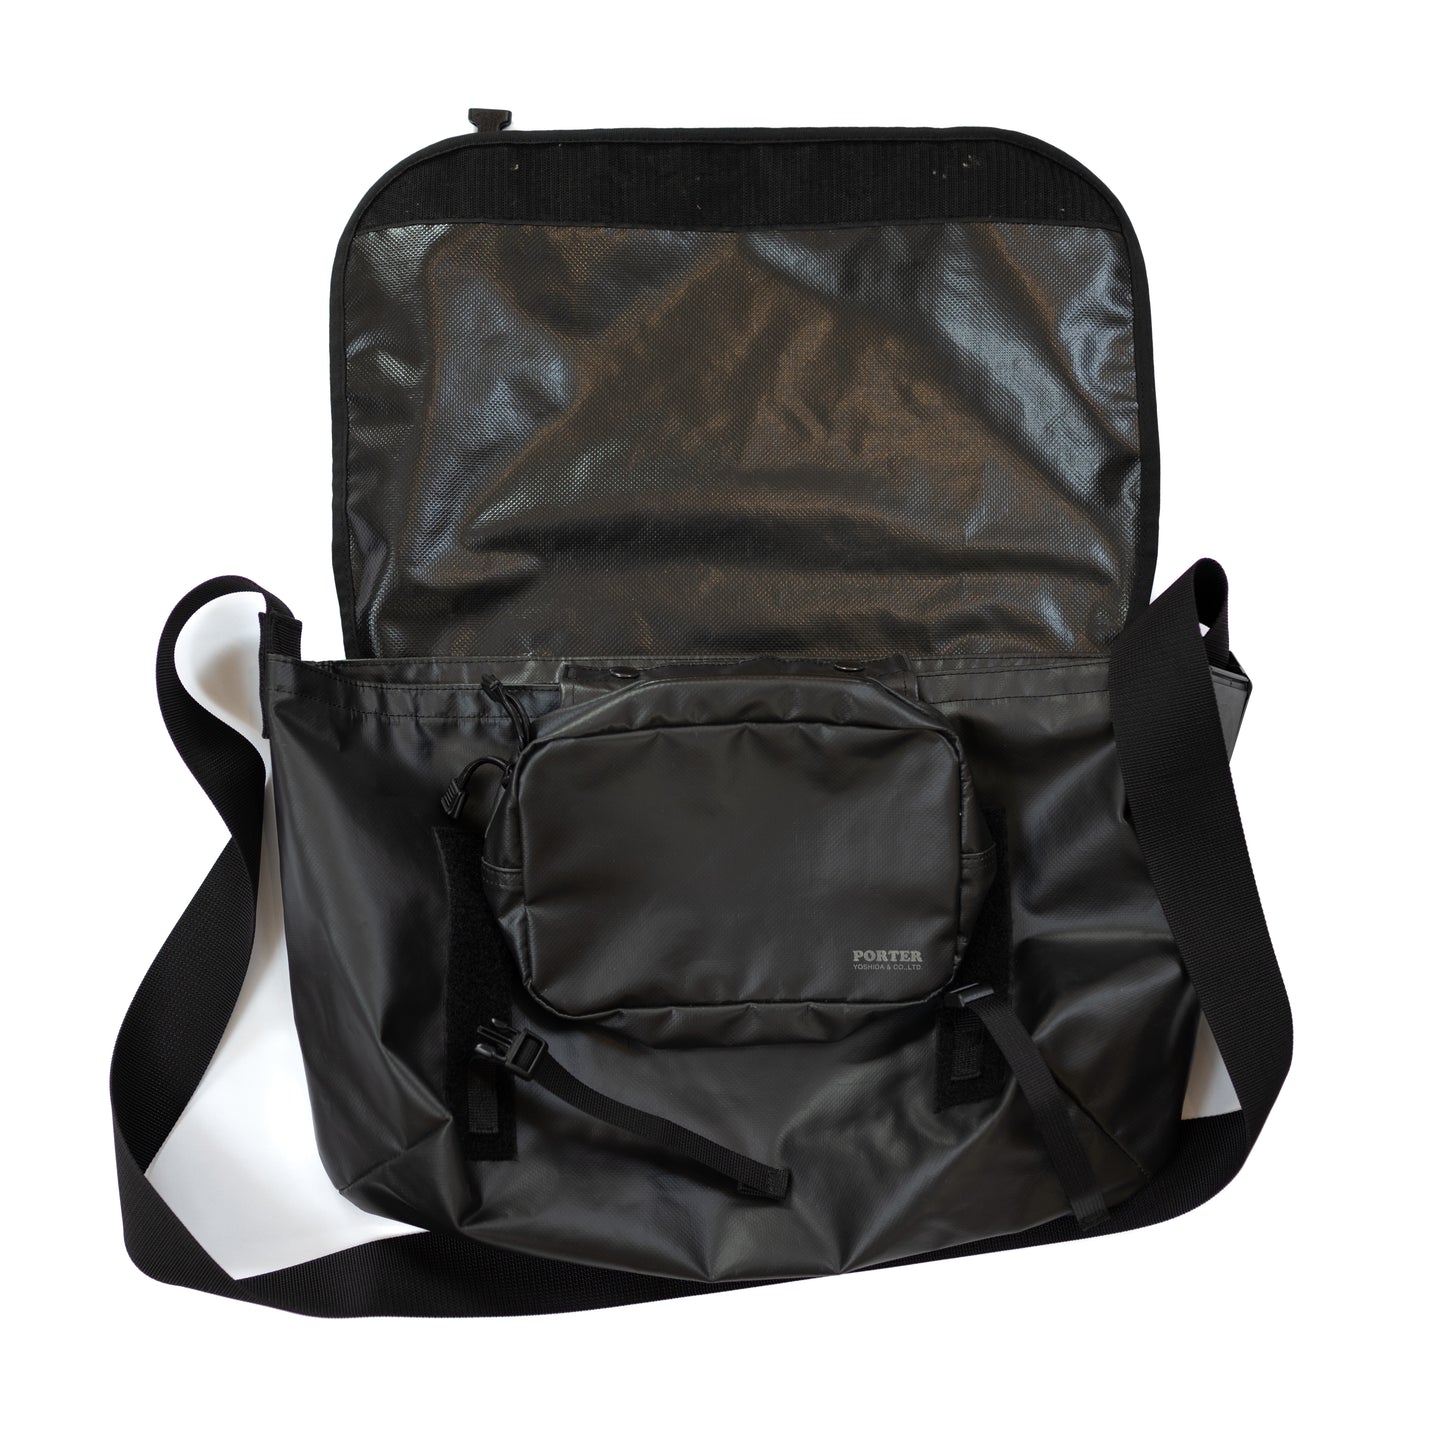 Porter PVC Messenger Bag